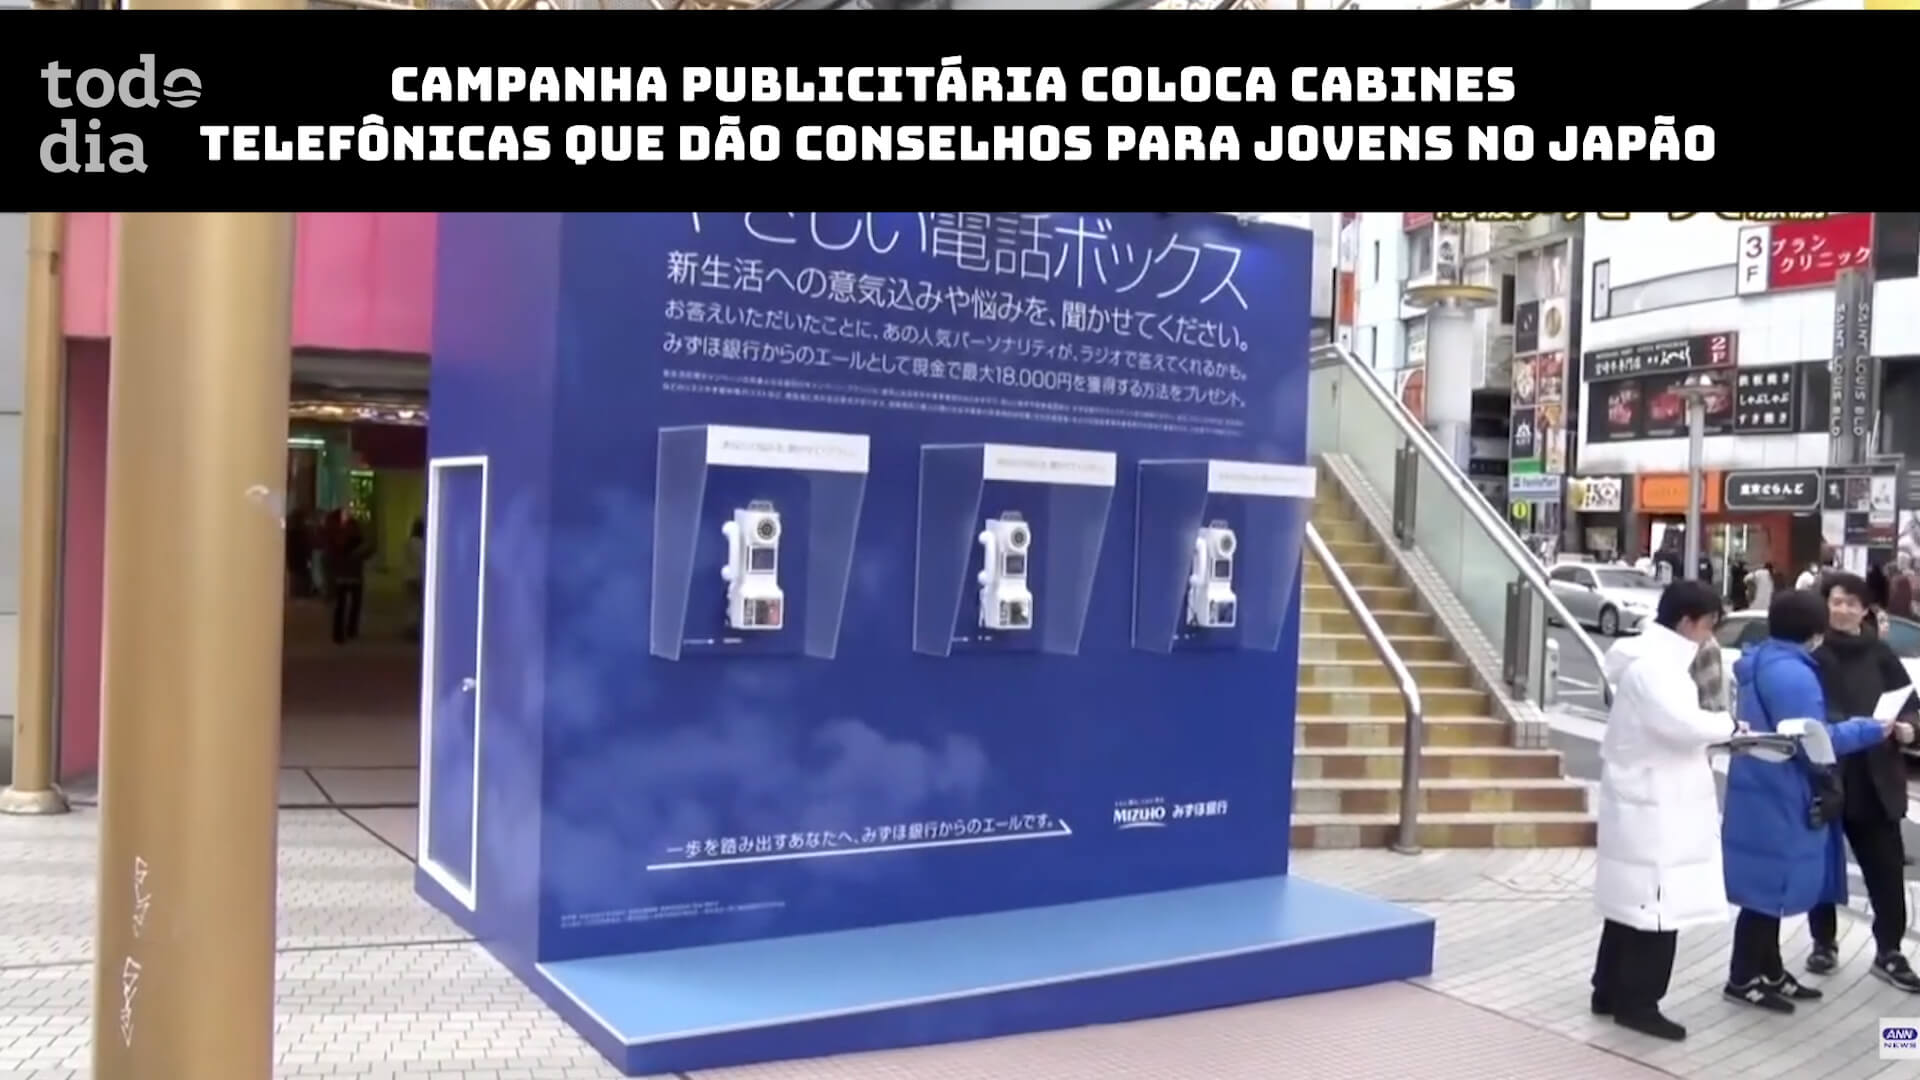 Campanha publicitária coloca cabines telefônicas que dão conselhos para jovens no Japão 